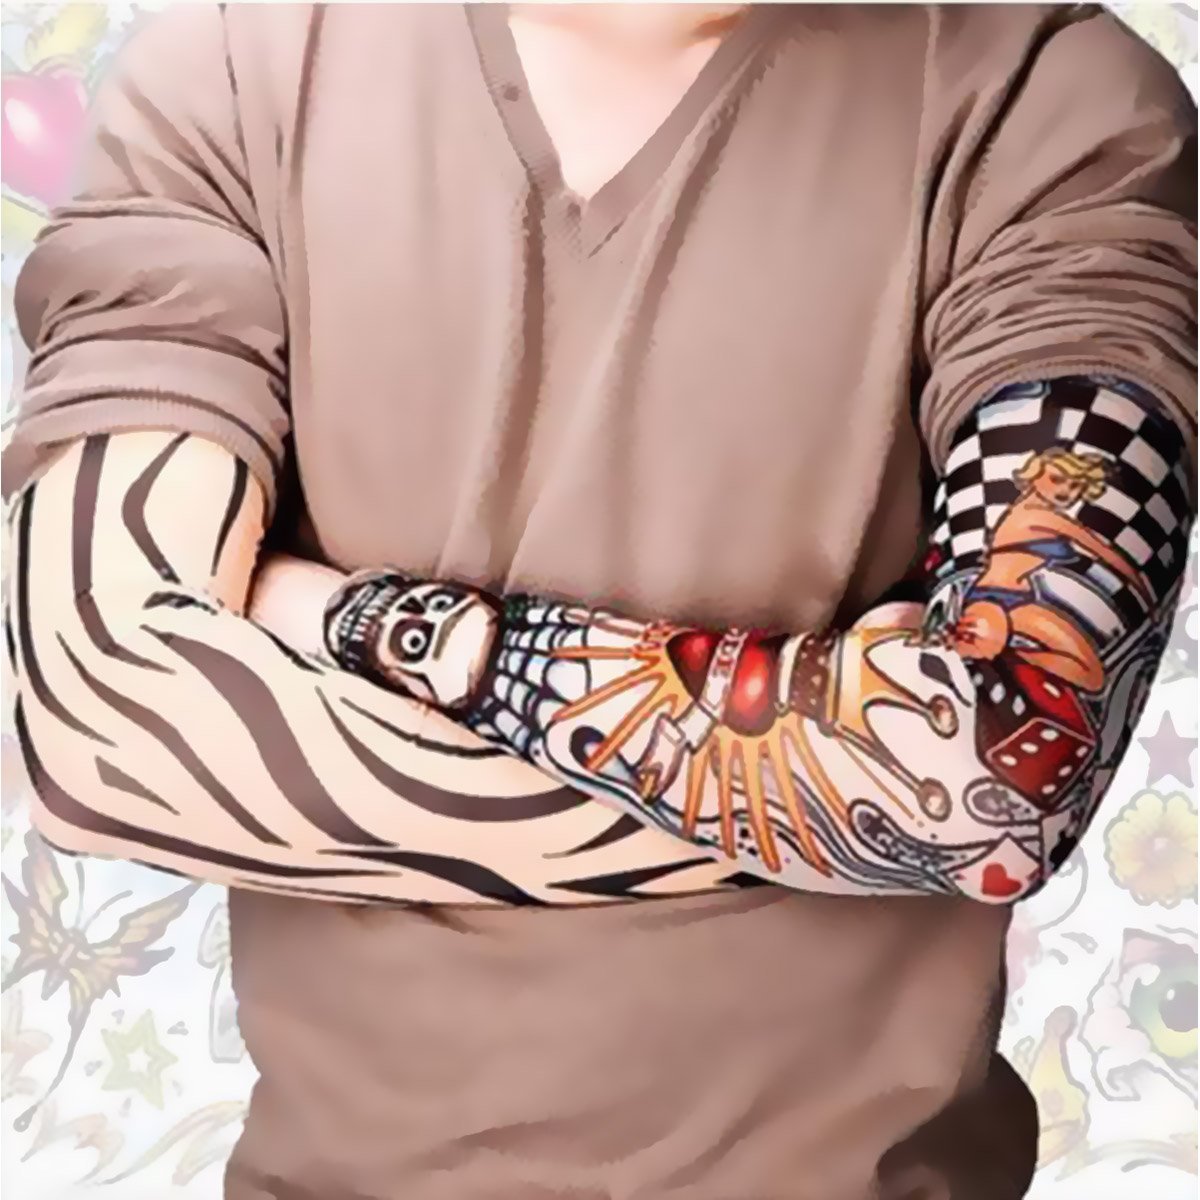 Akstore Temporary Tattoo Sleeves Set Arts Temporary Fake Slip On Tattoo Arm Sleeves Kit (Multicolor Set1)